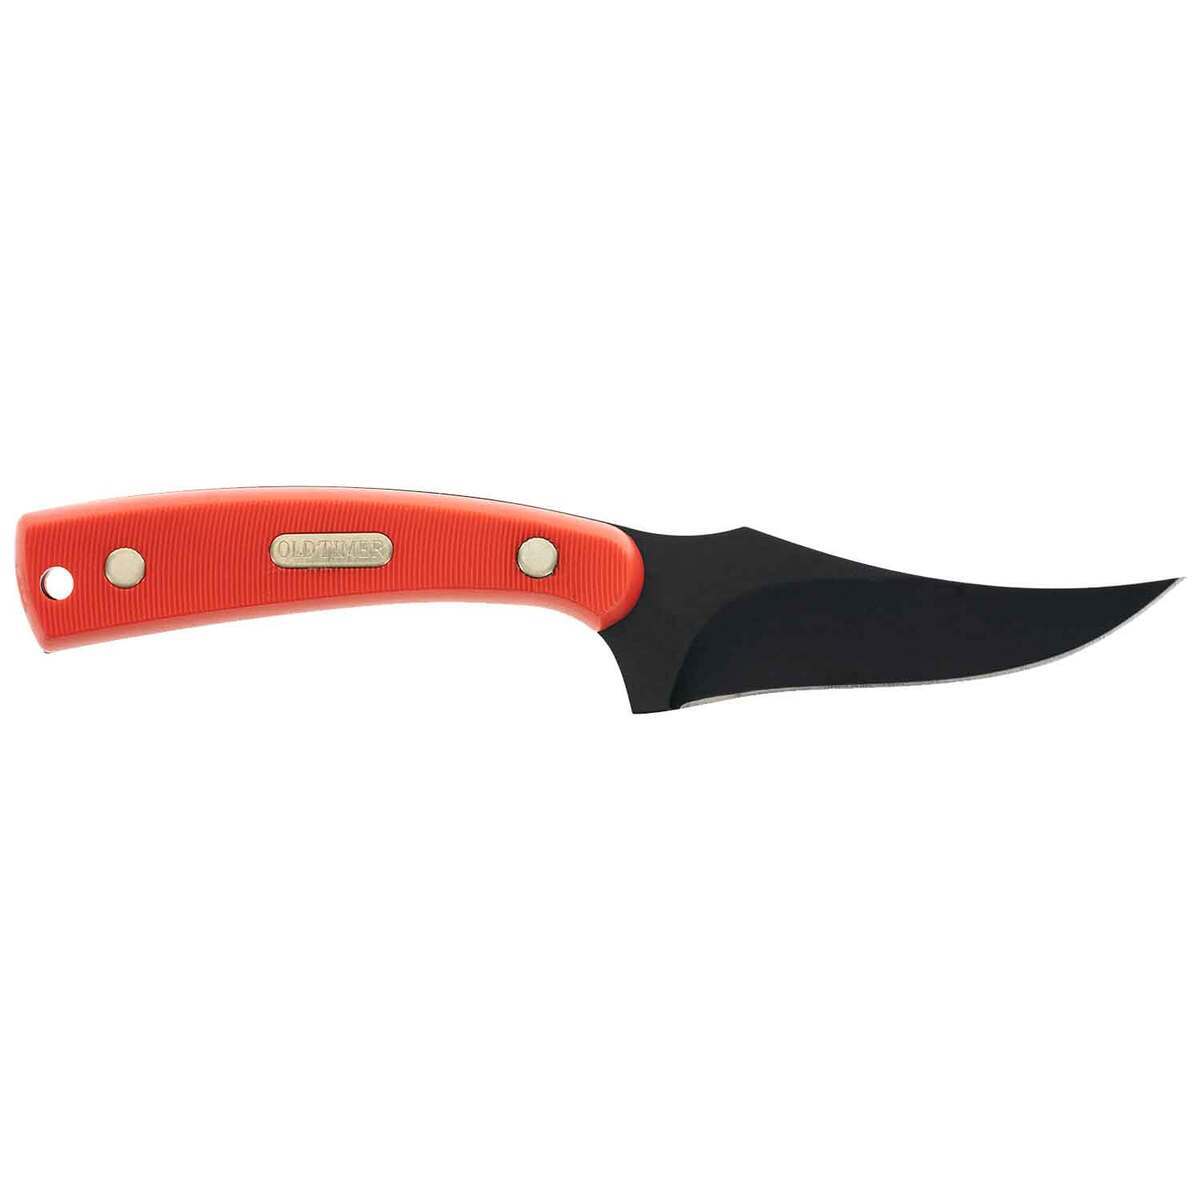 Old Timer Sharpfinger 3.5 inch Fixed Blade Knife - Orange | Knives.com